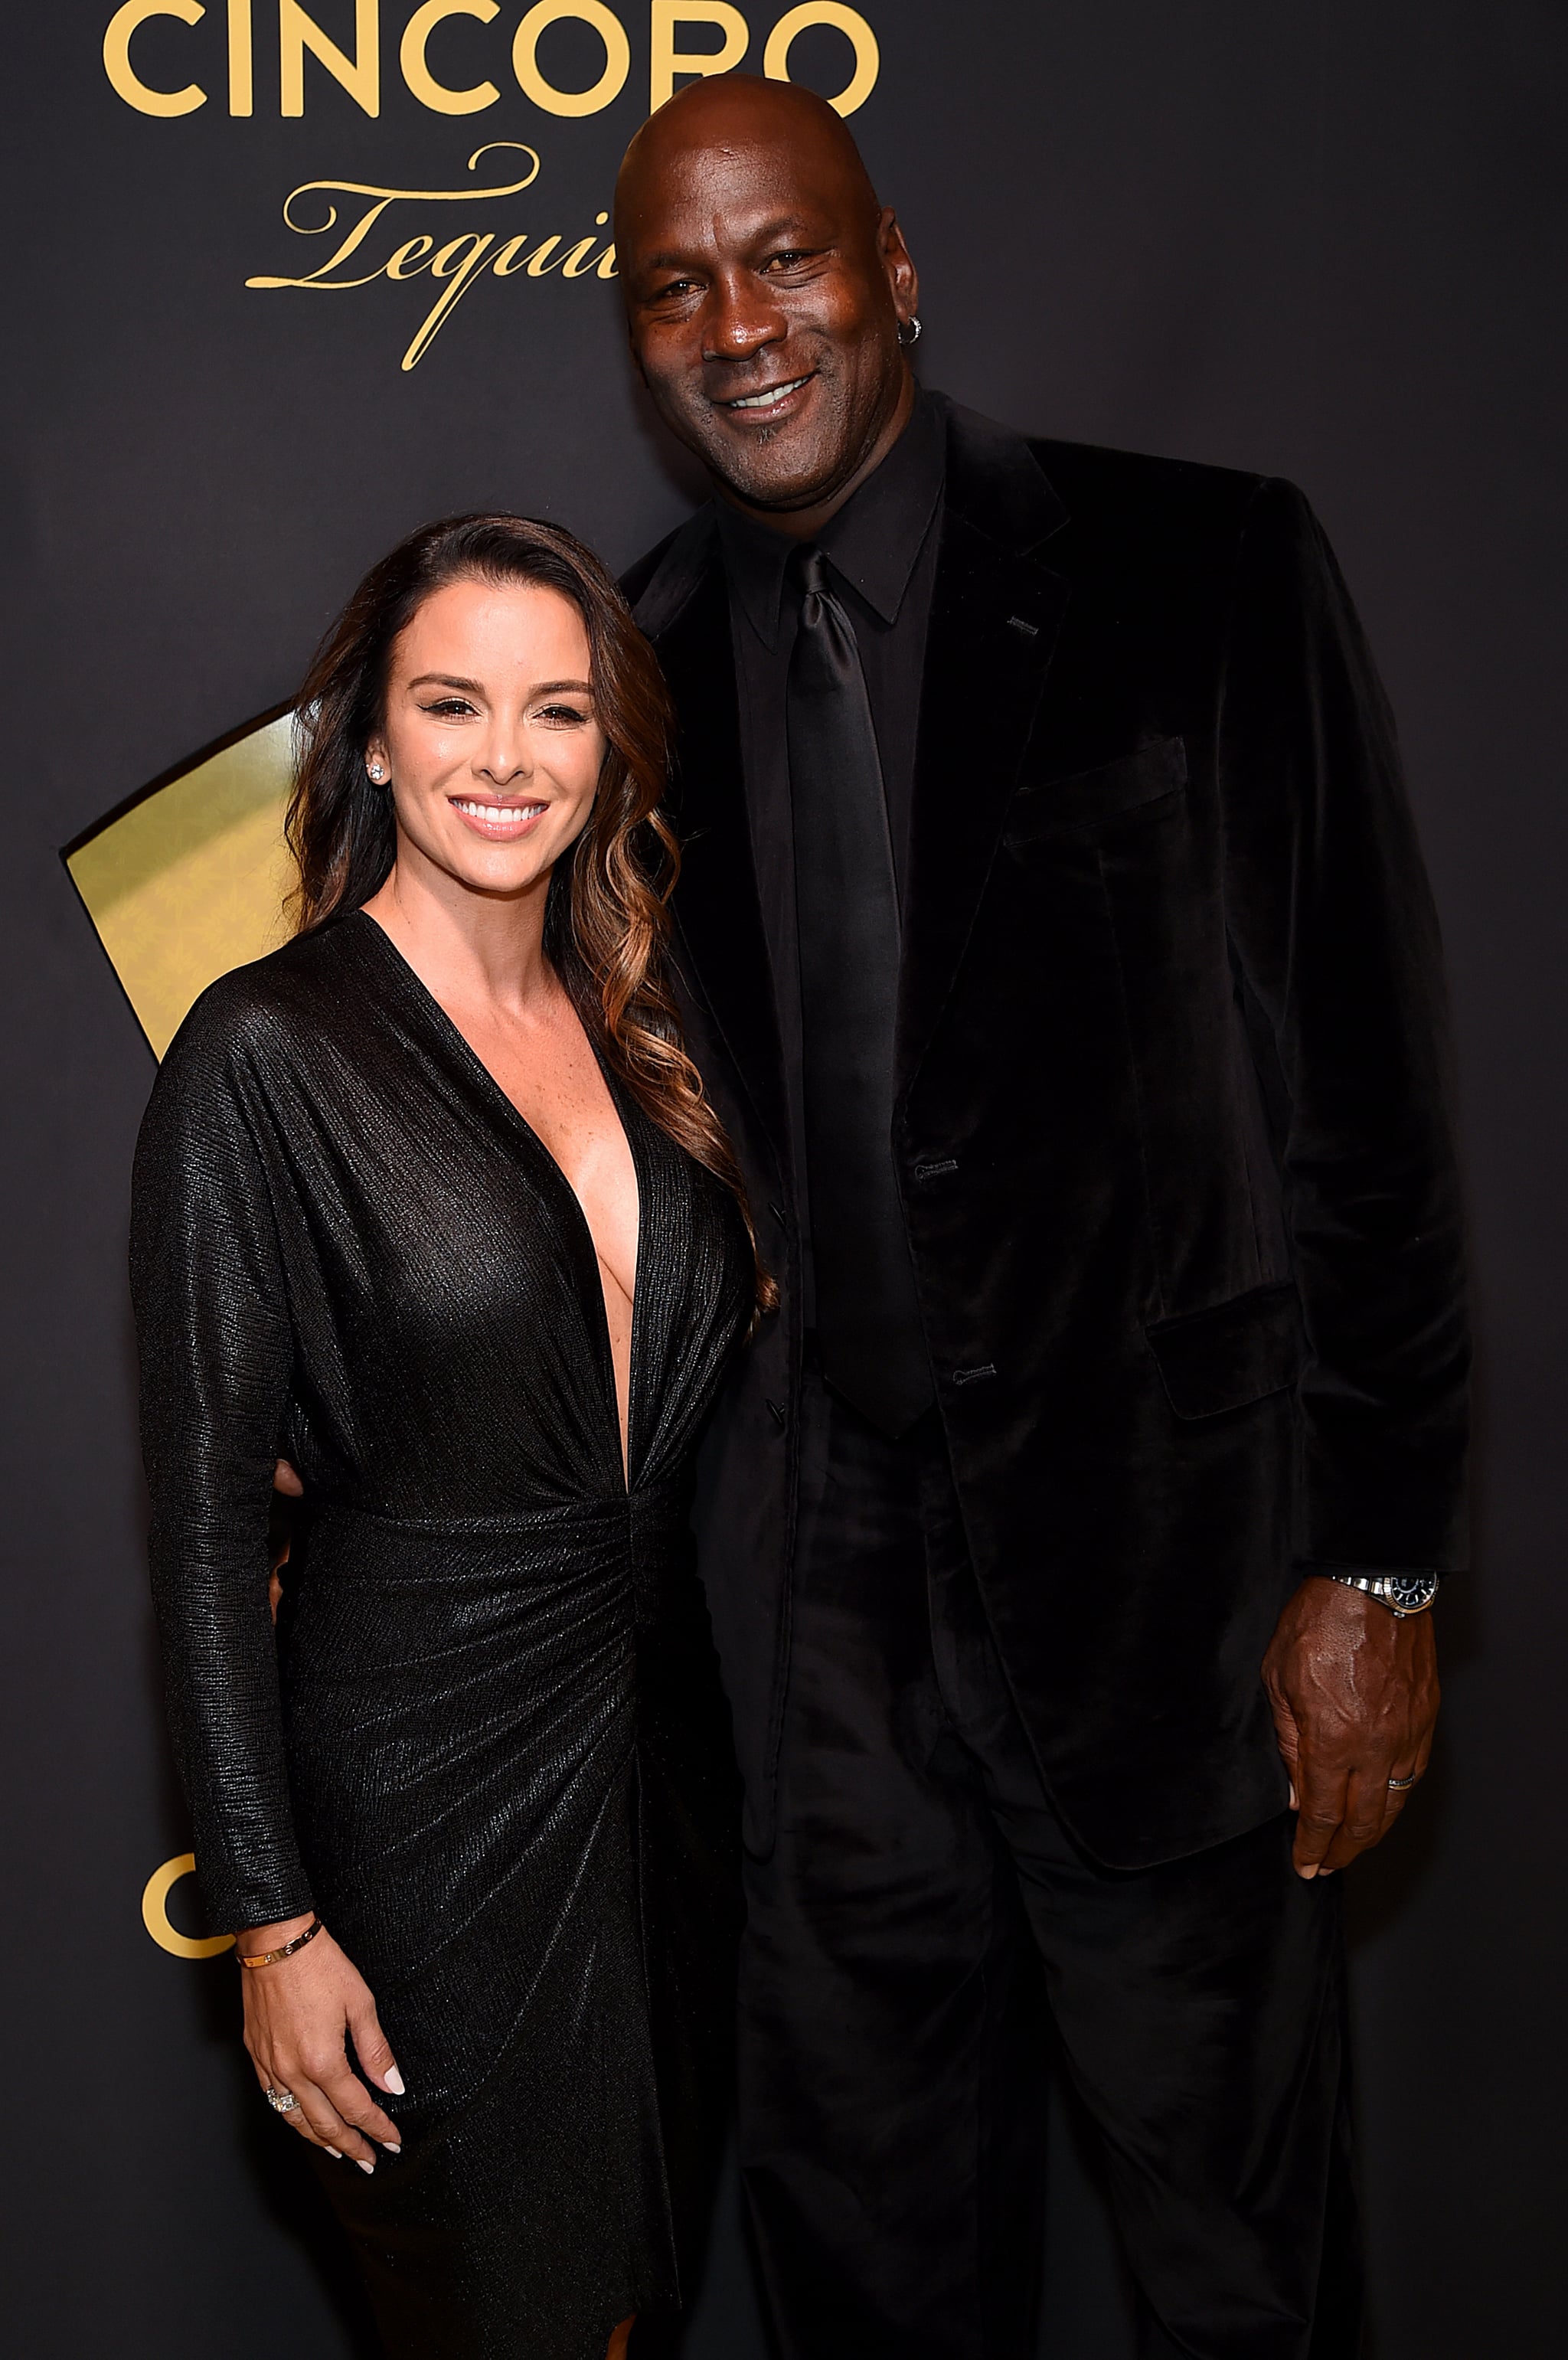 høflighed enkemand vejkryds Who Is Michael Jordan's Wife? | POPSUGAR Celebrity